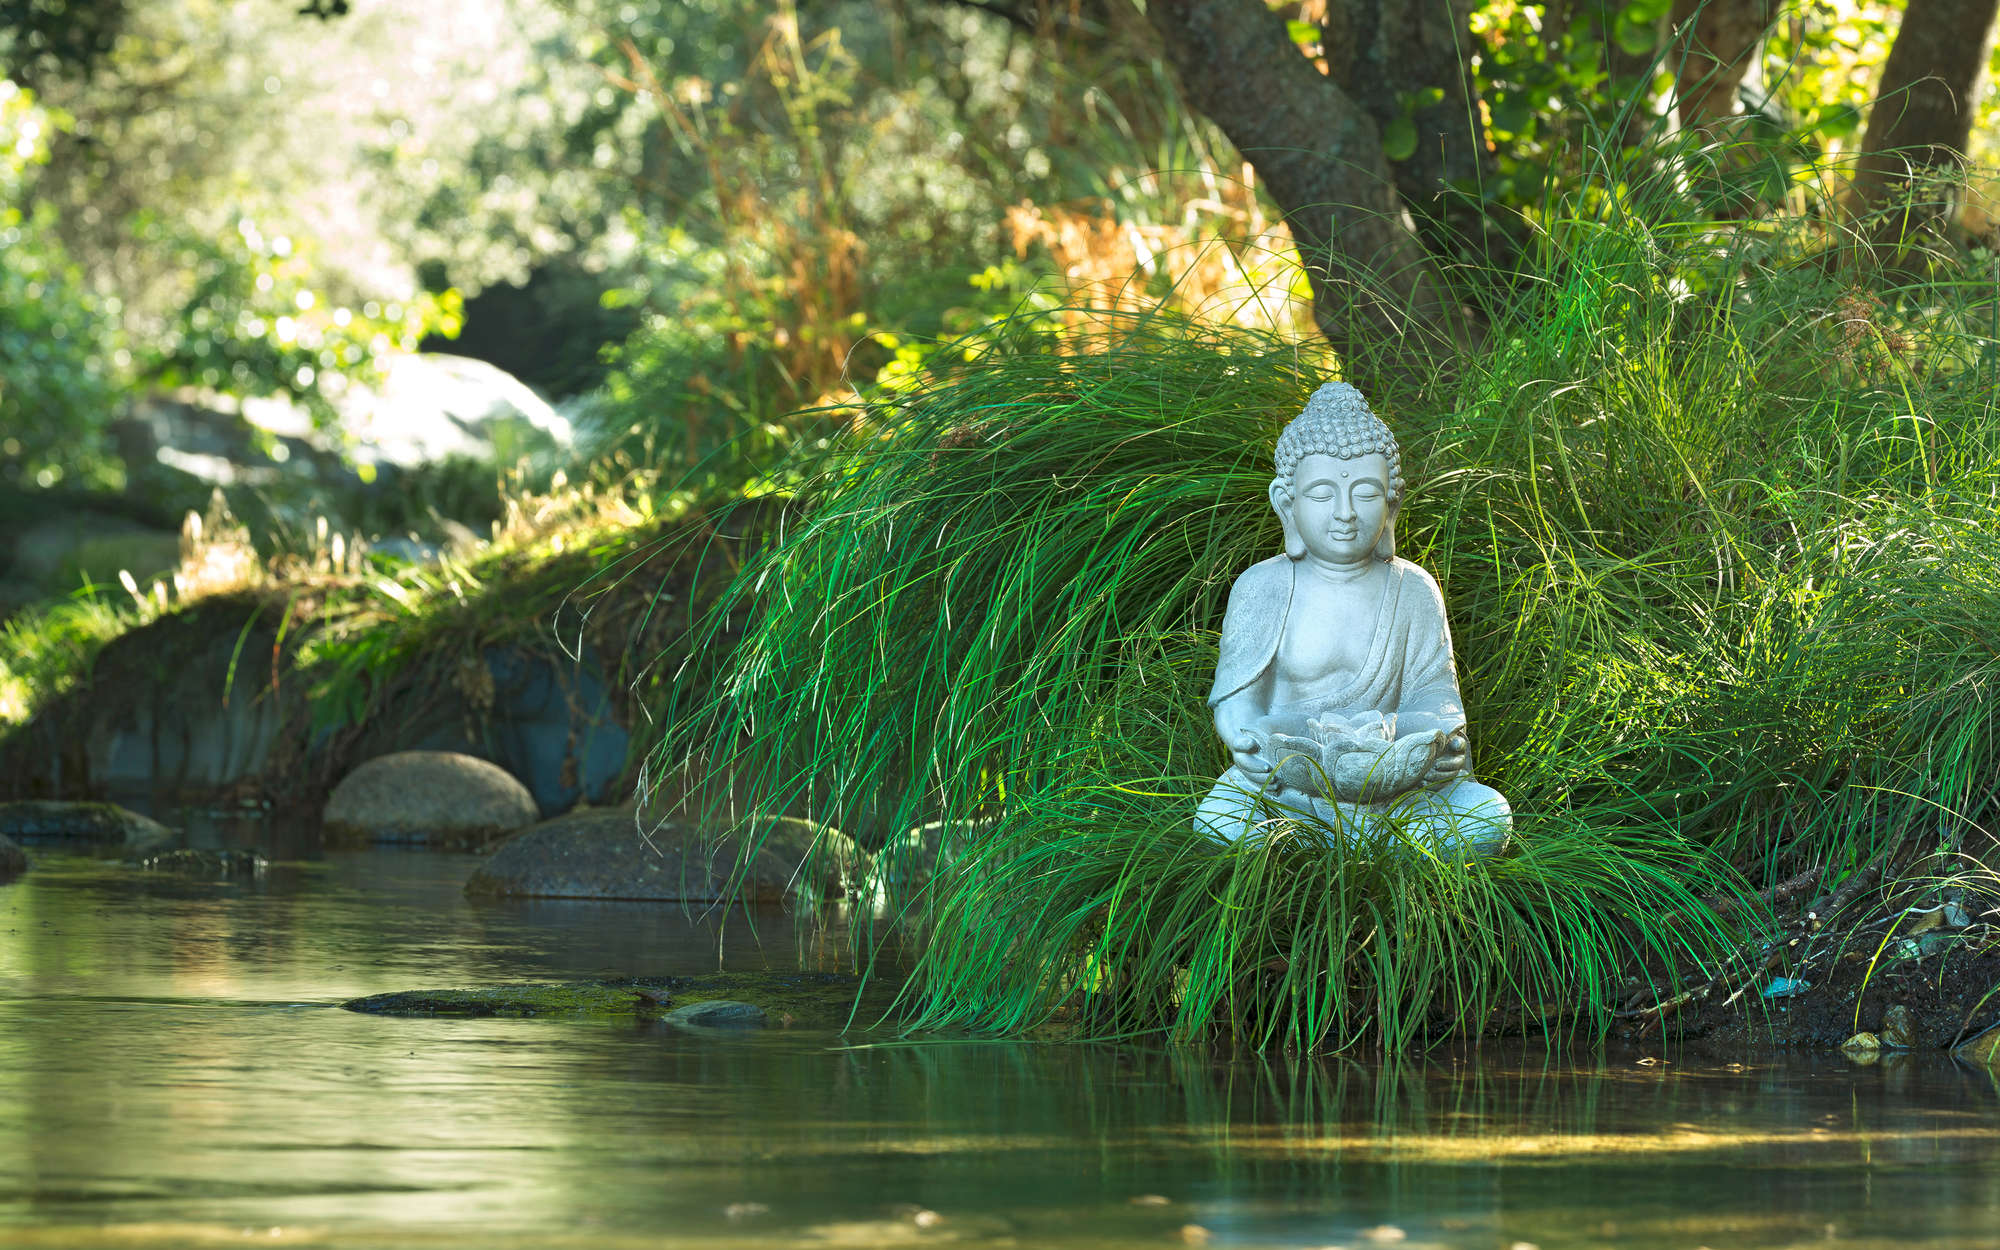             Fotomural Estatua de Buda en la ribera del río - tejido no tejido liso de alta calidad
        